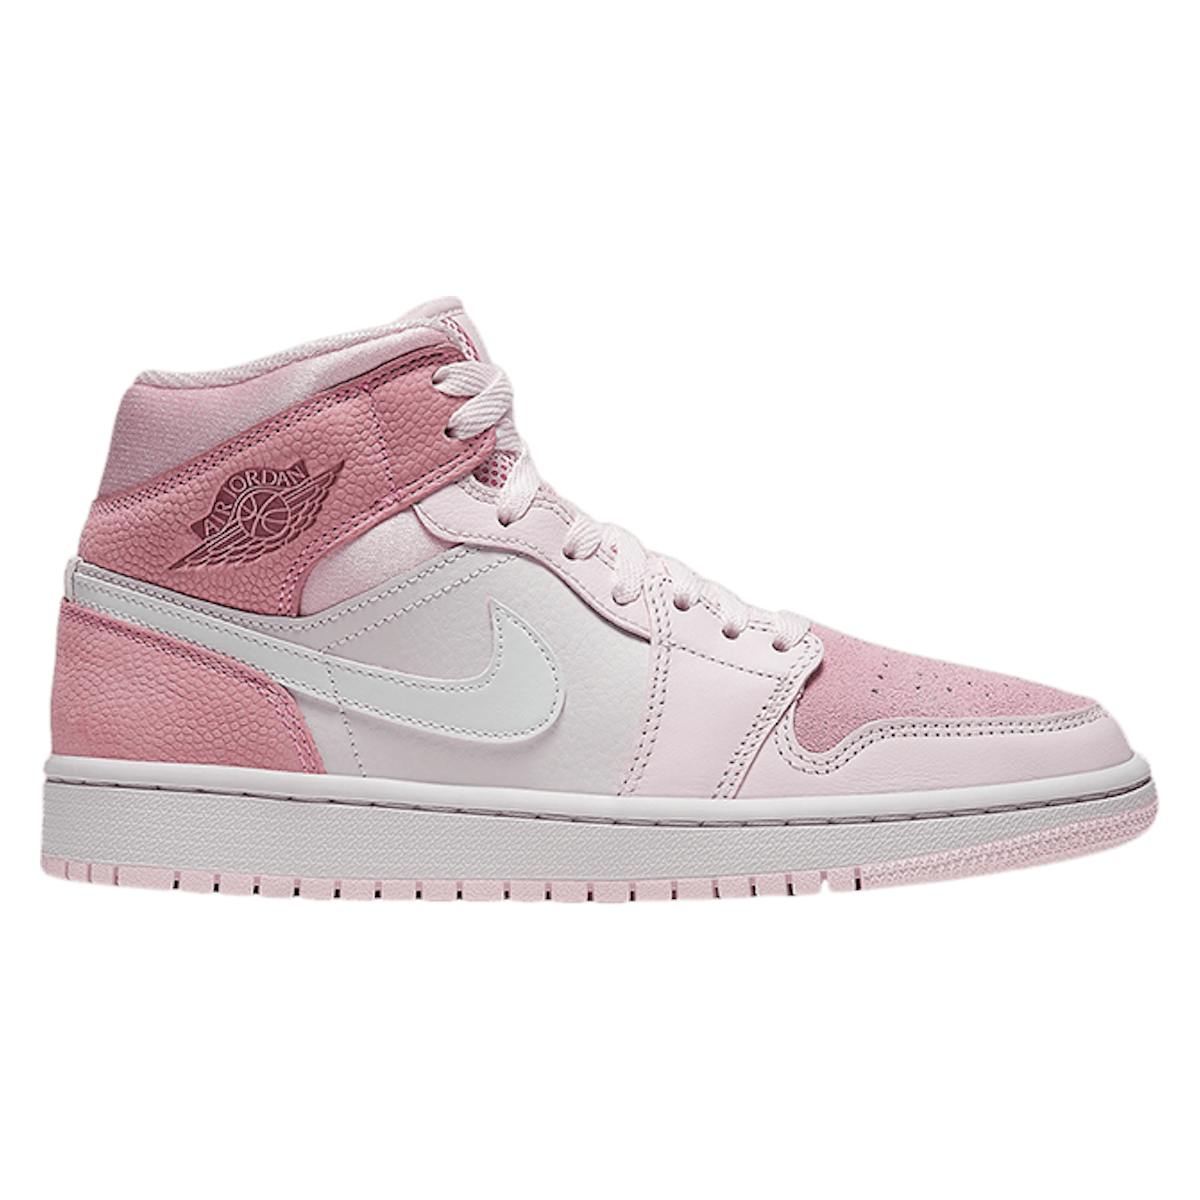 Air Jordan 1 Mid "Pink"